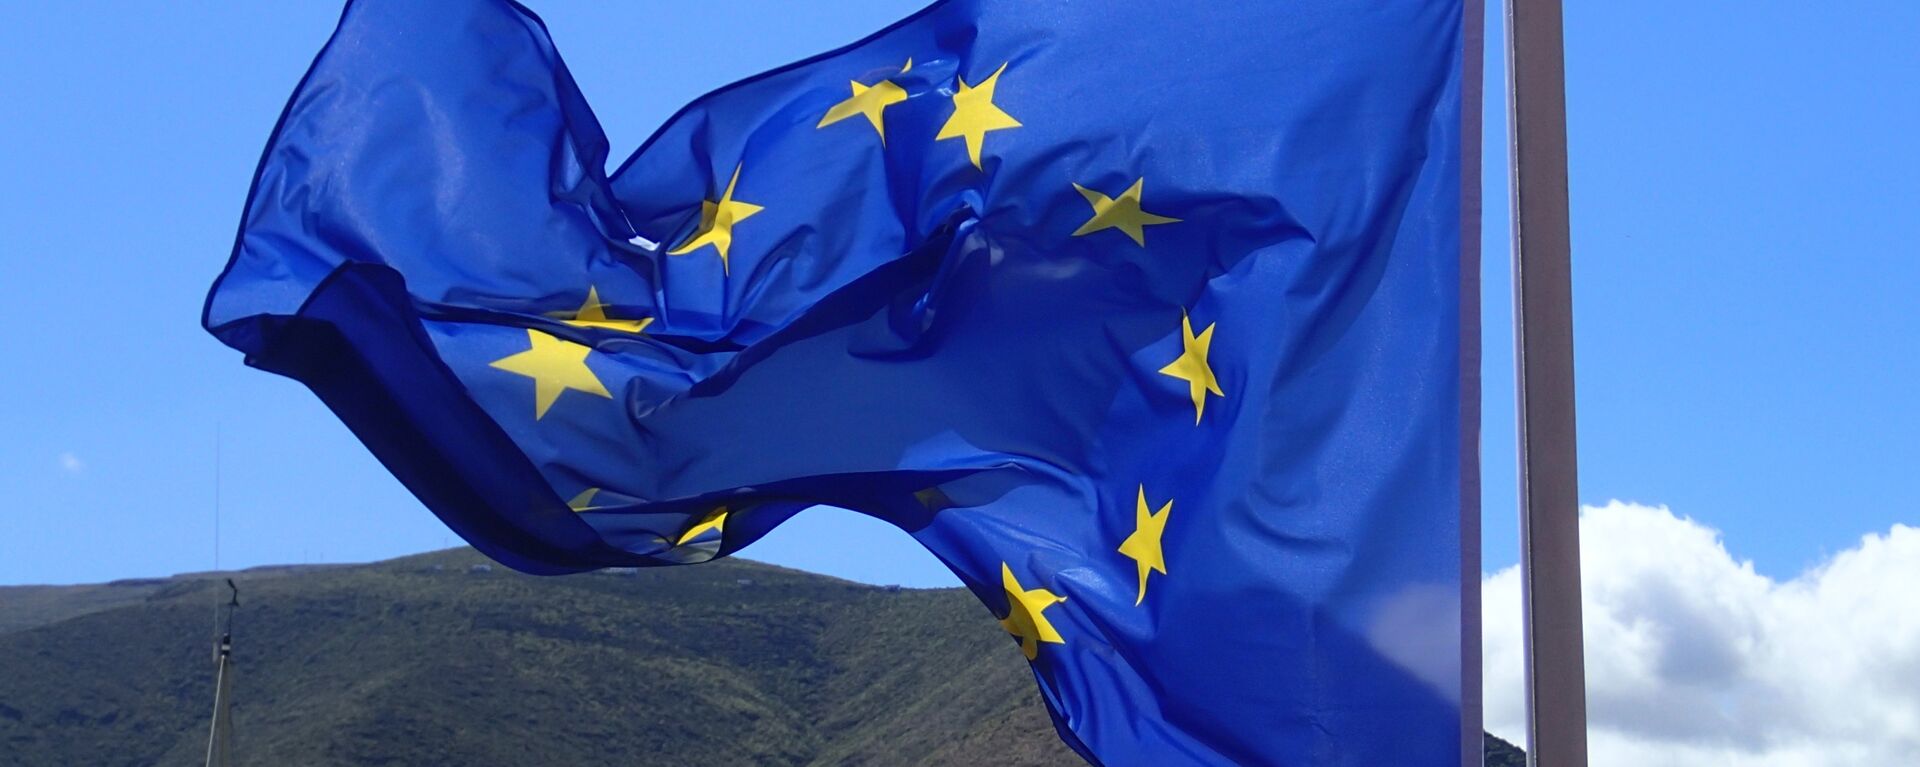 Bandera de la Unión Europea - Sputnik Mundo, 1920, 10.03.2021